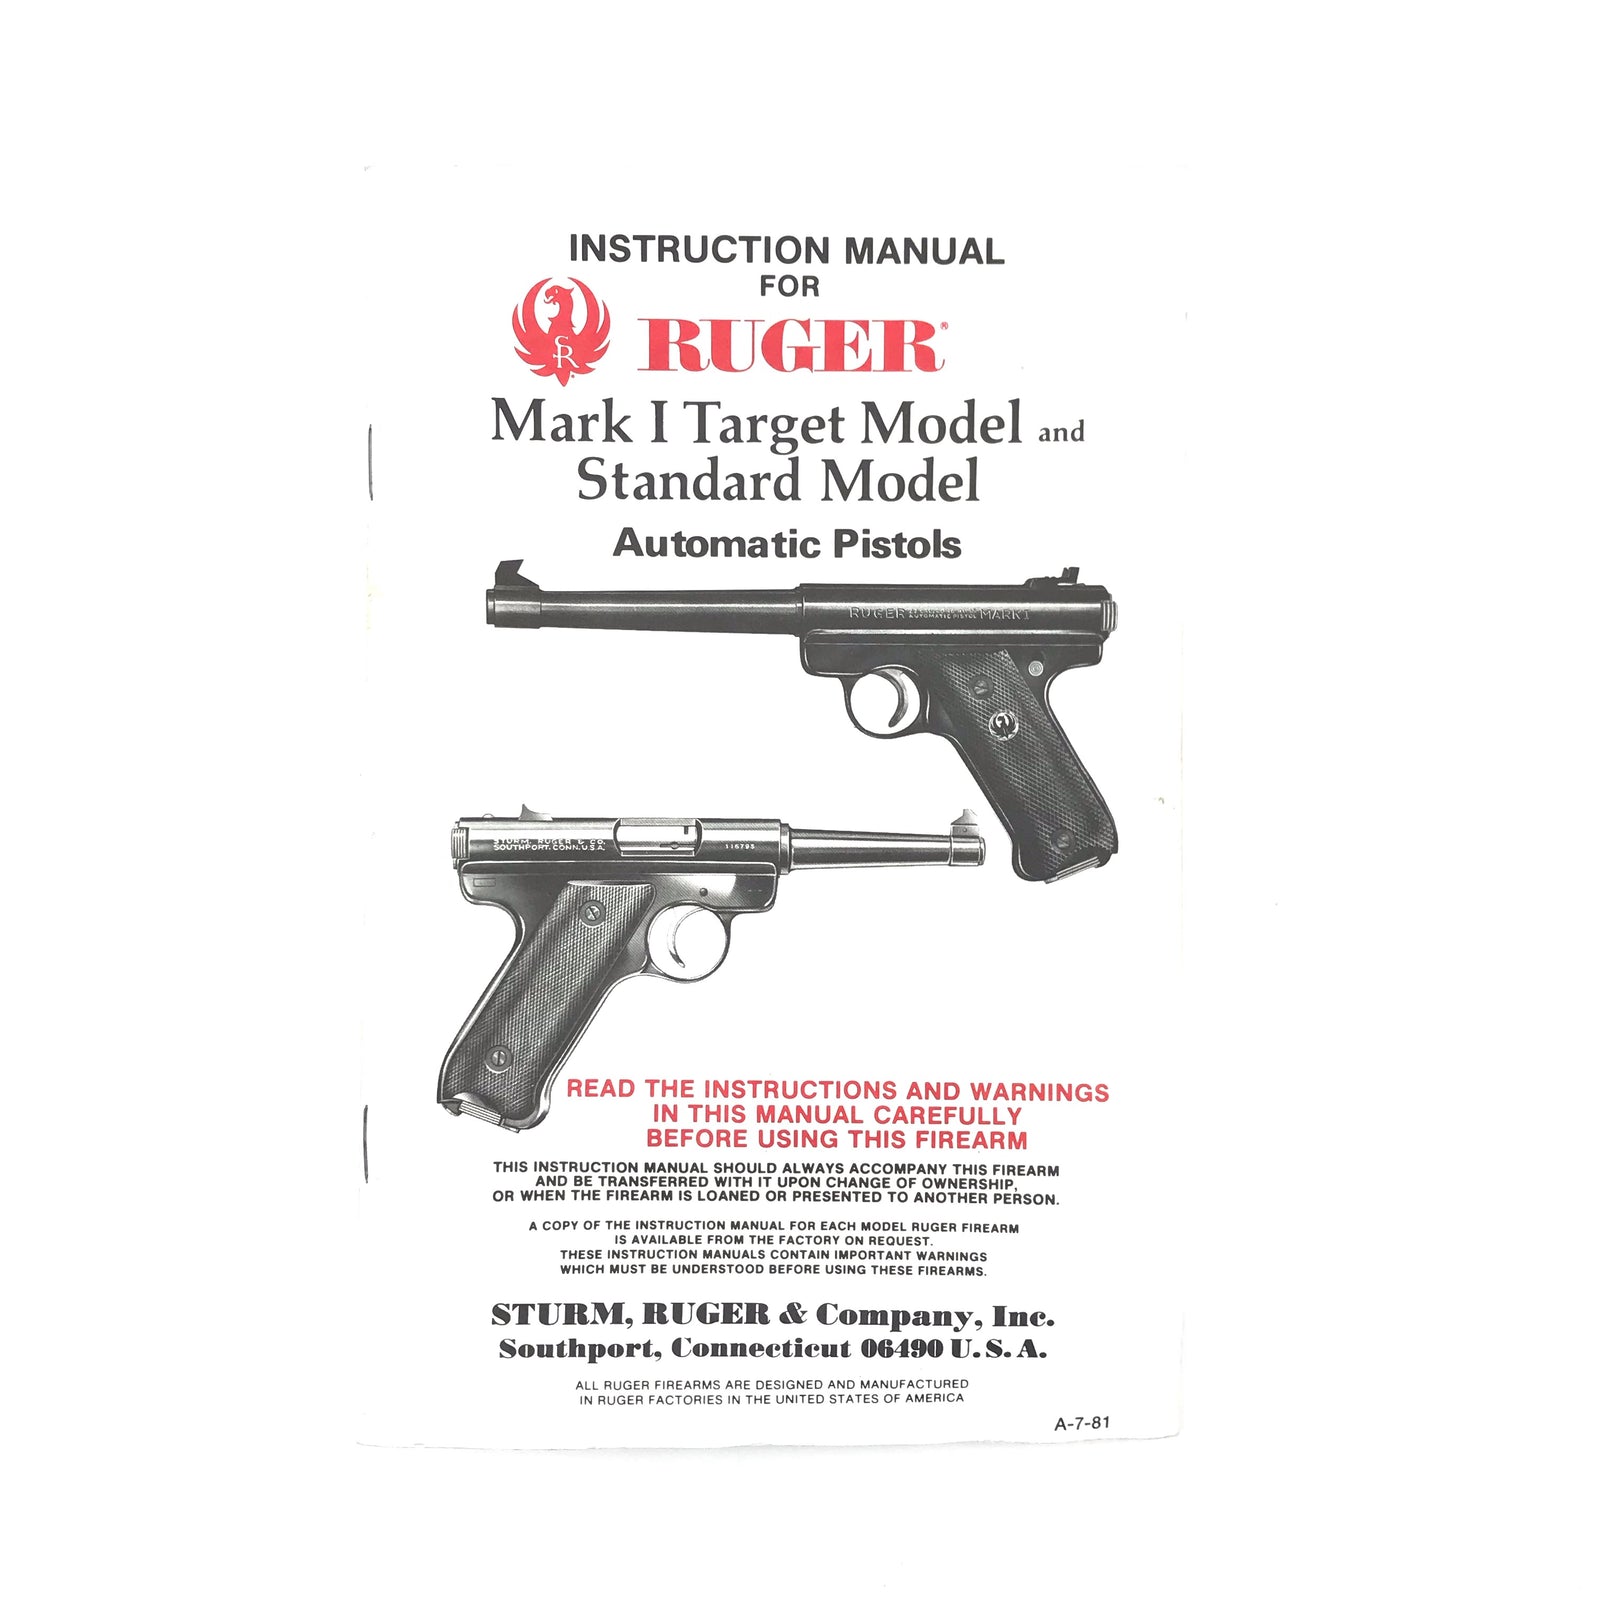 Ruger Instruction Manual Mark I Target Model & Standard Model (1981)